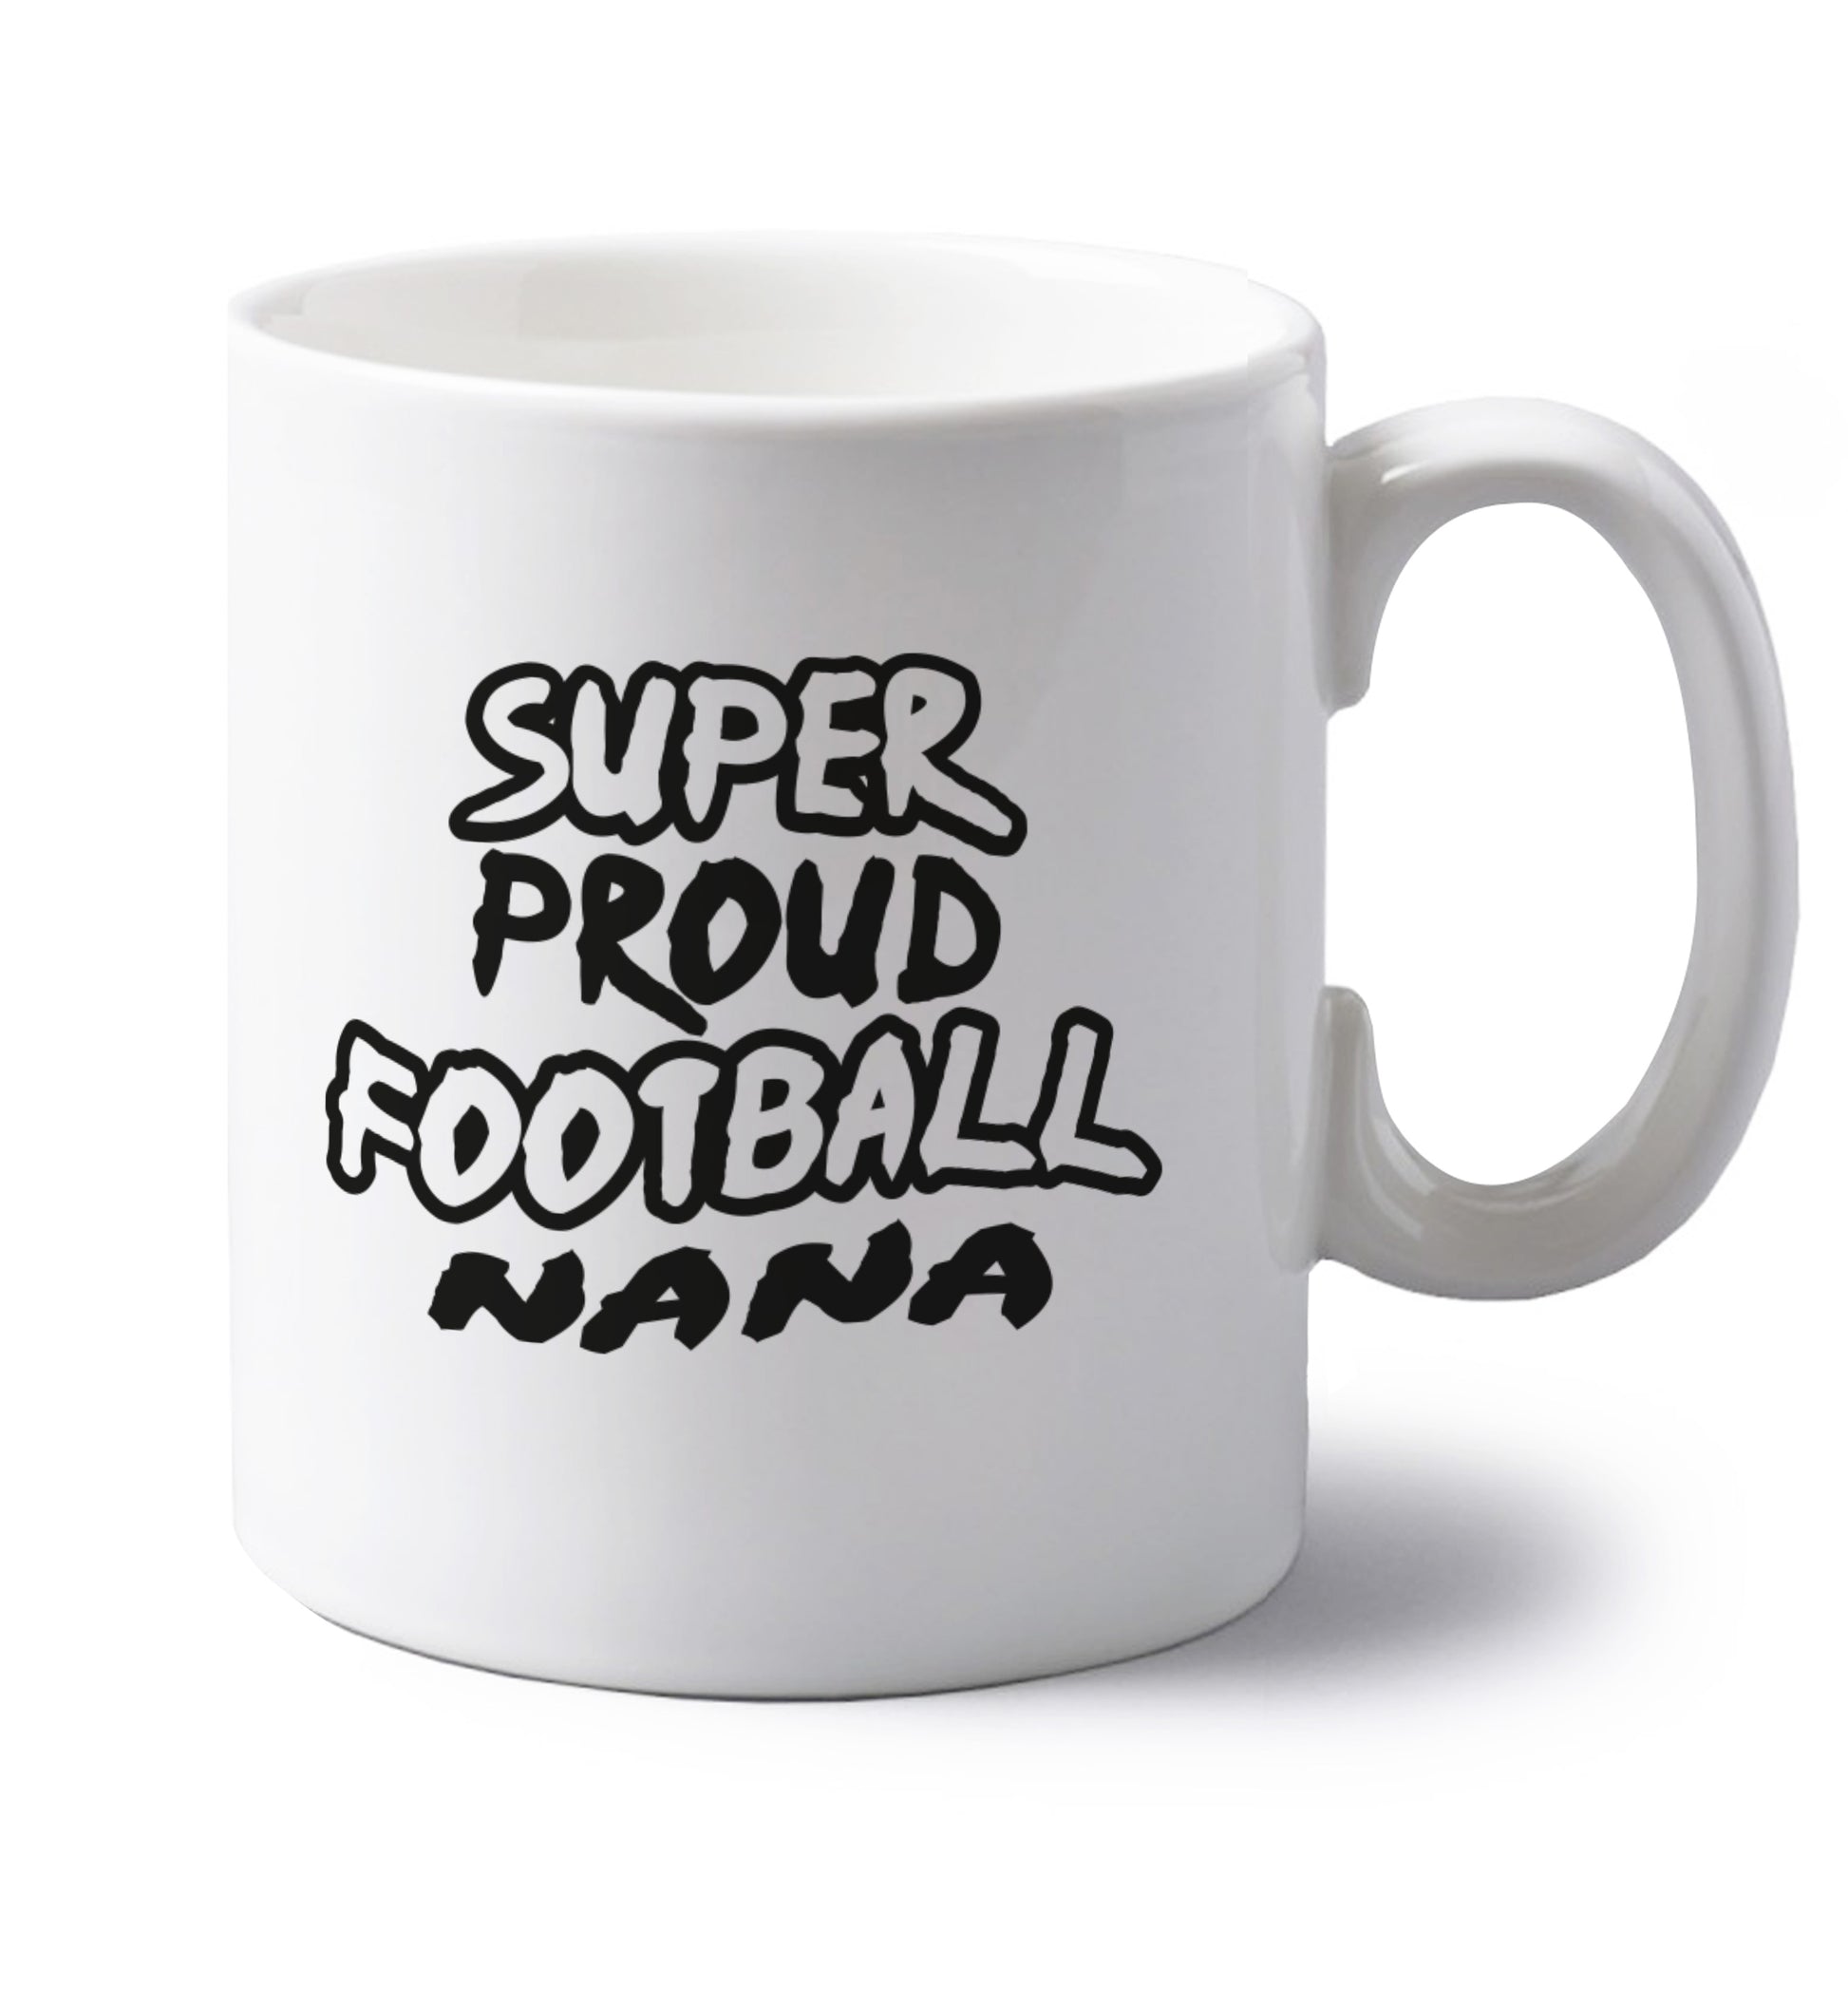 Super proud football nana left handed white ceramic mug 